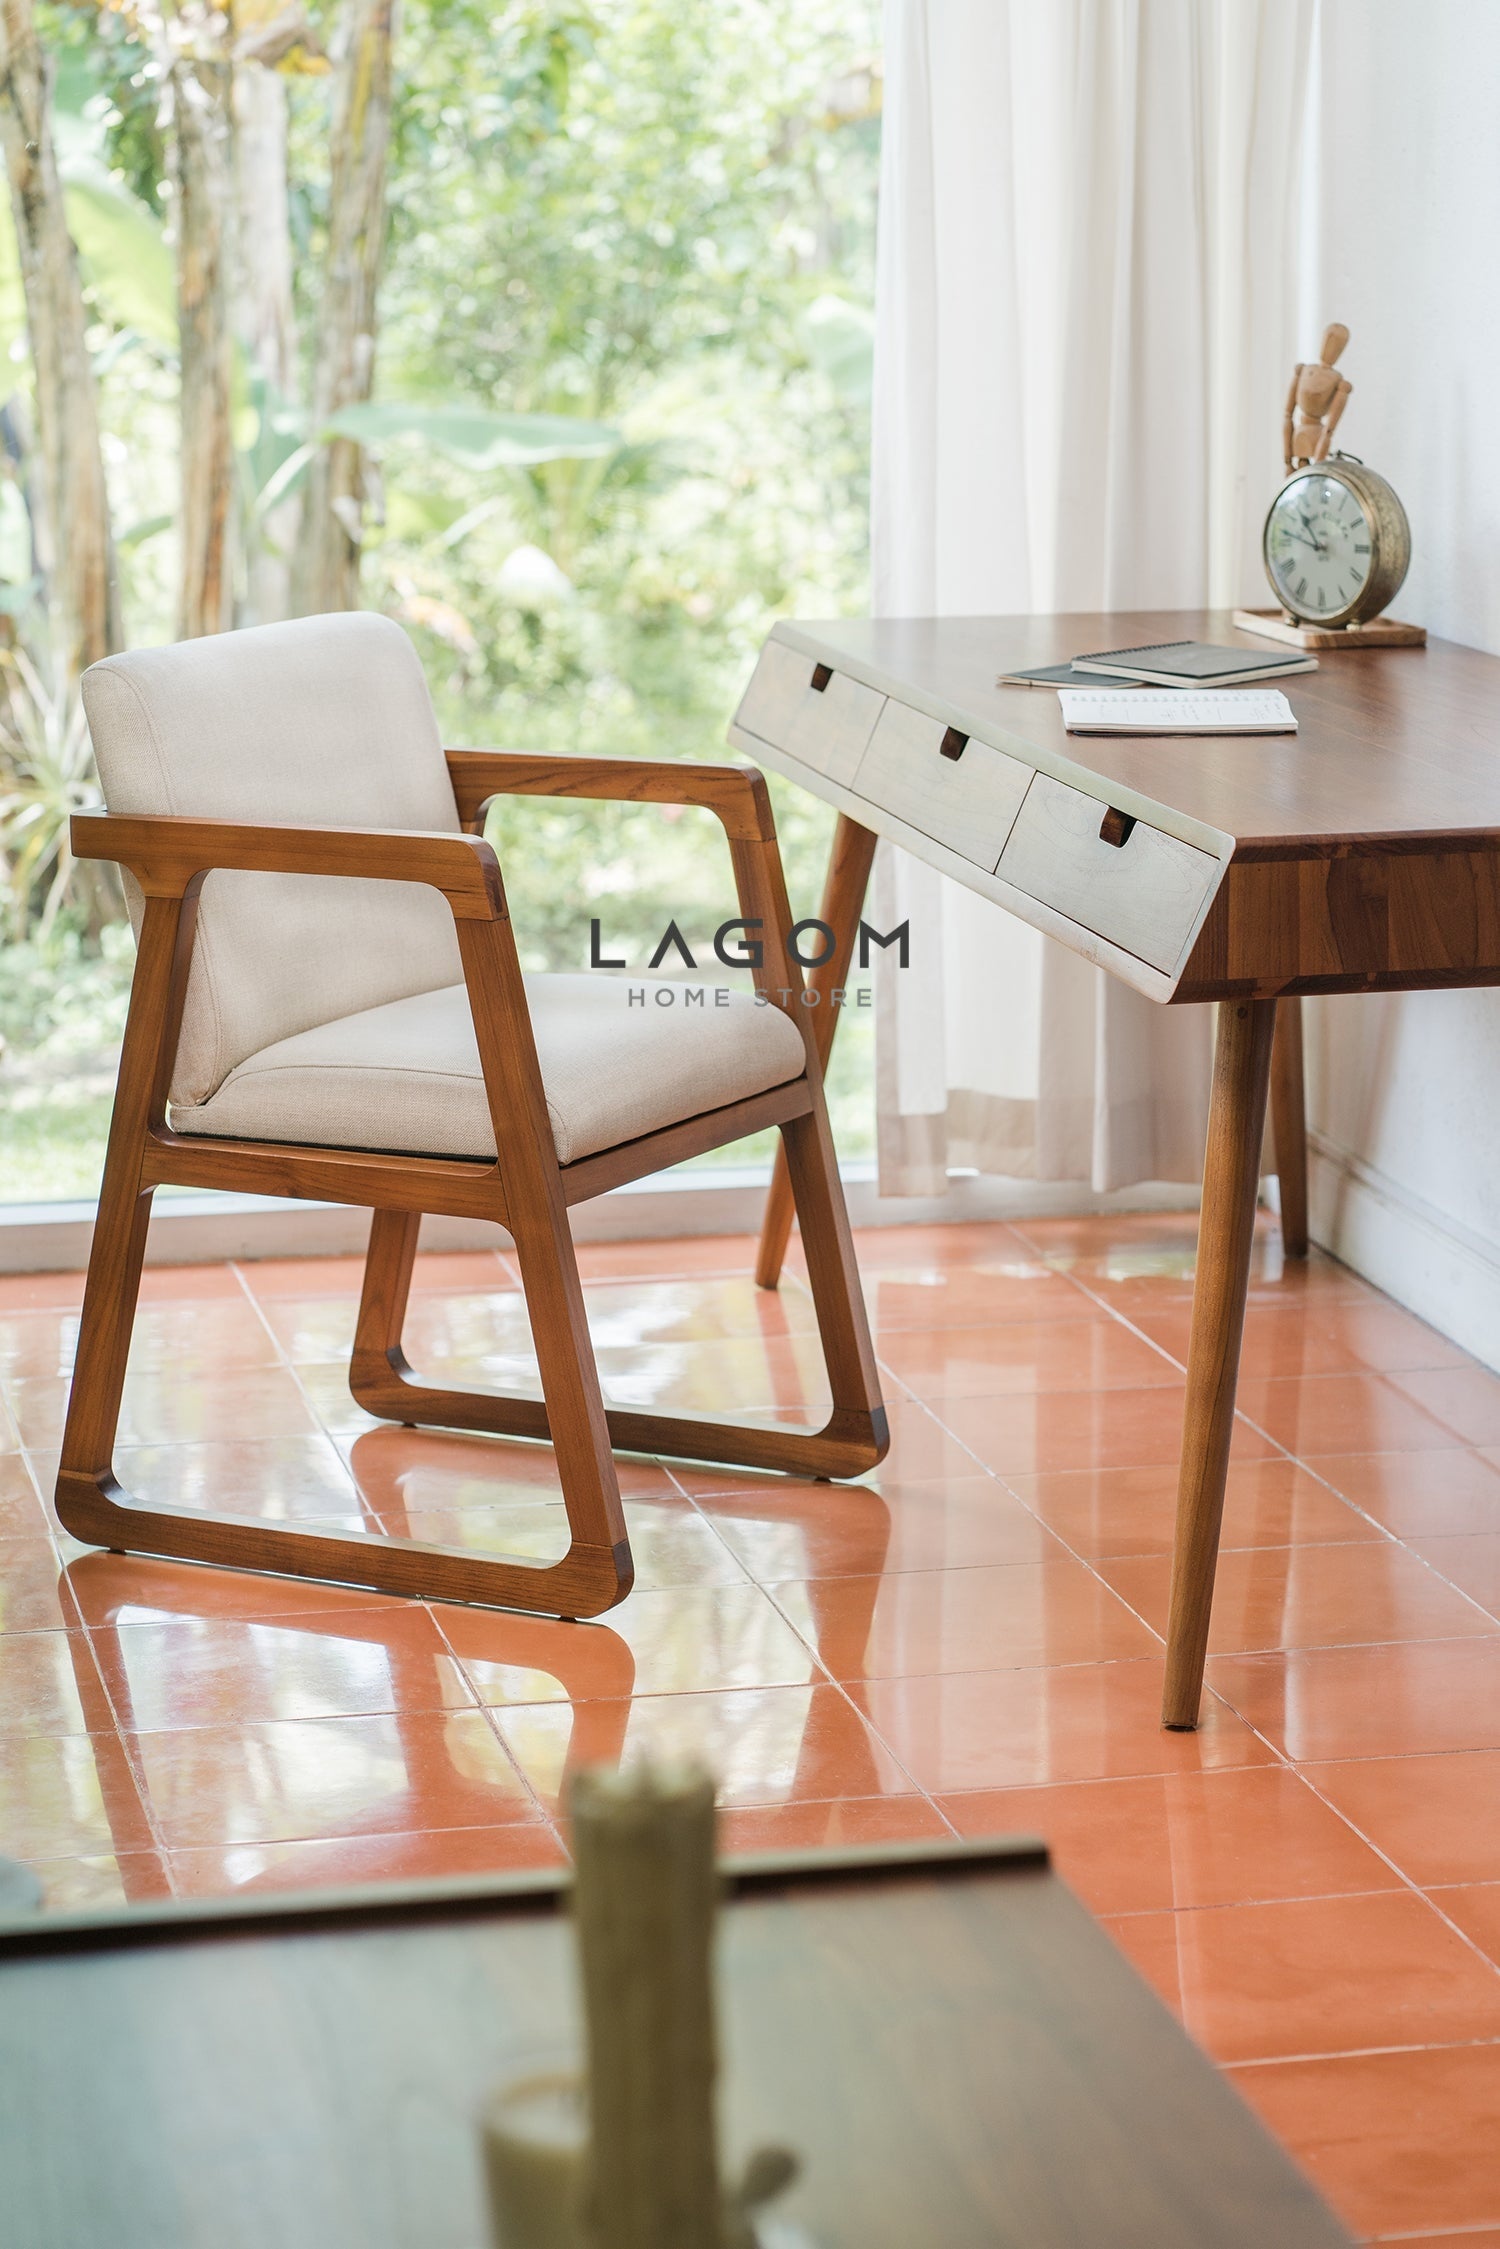 Kursi Kerja dari Kayu Jati Solid dan Cushion Premium Office Seating Lagom Home Store Jati Furnitur Teak Furniture Jakarta